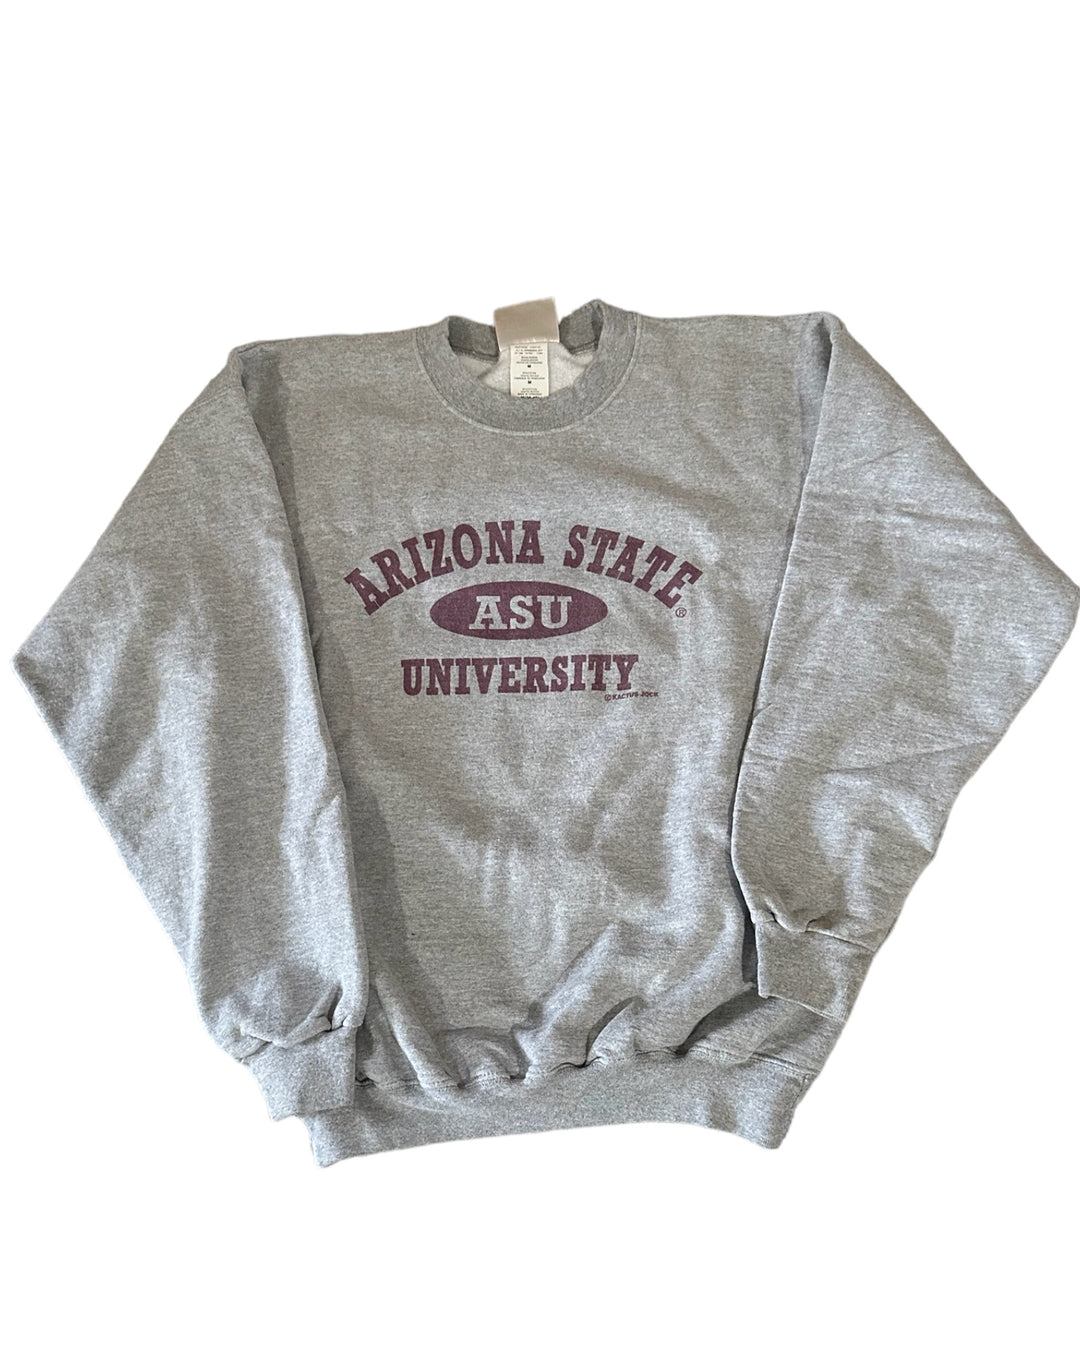 ASU Vintage Sweatshirt